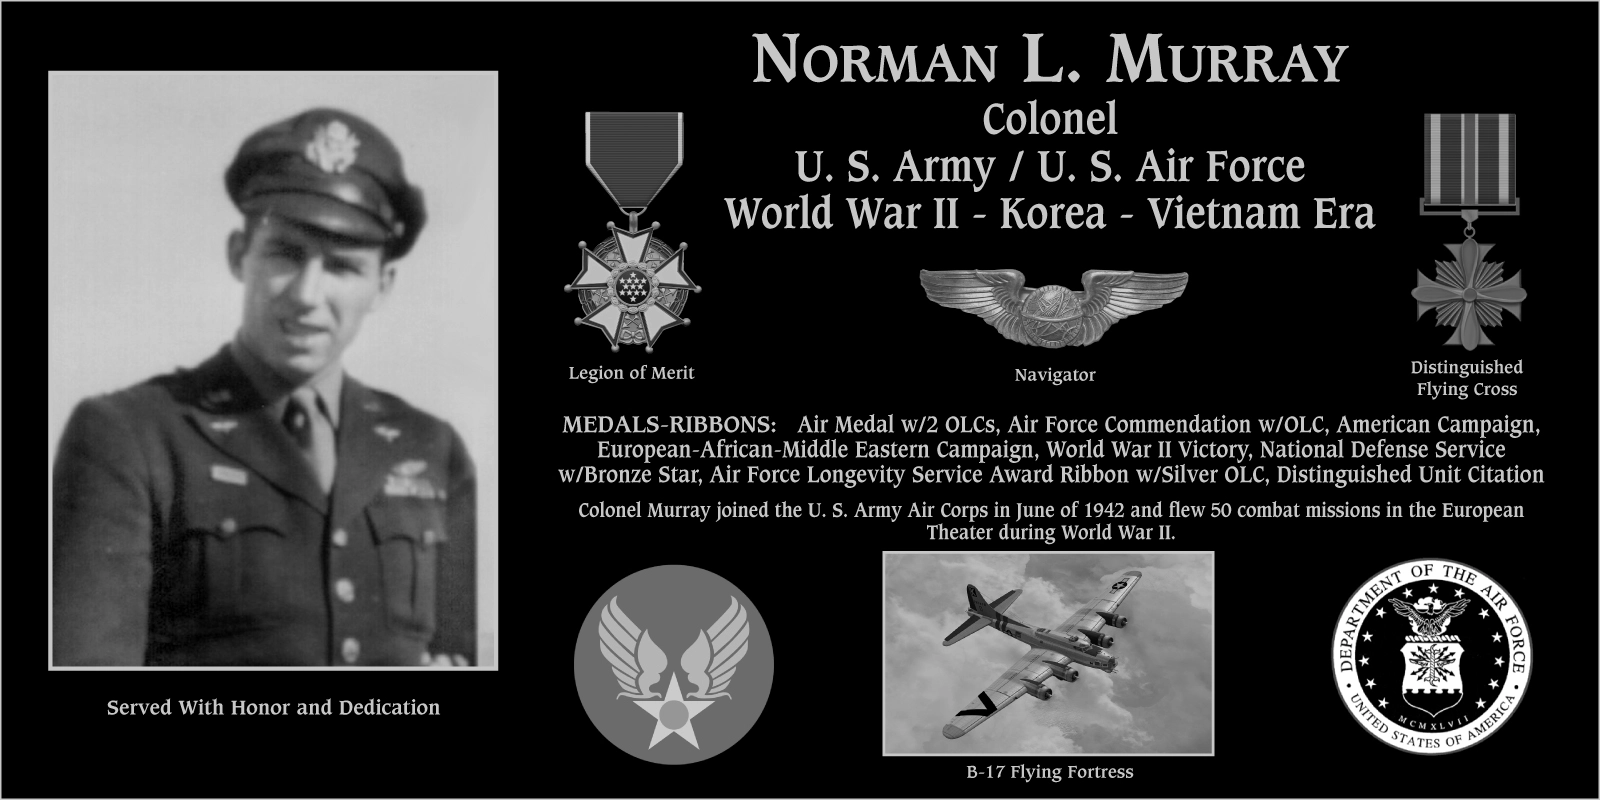 Norman L. Murray